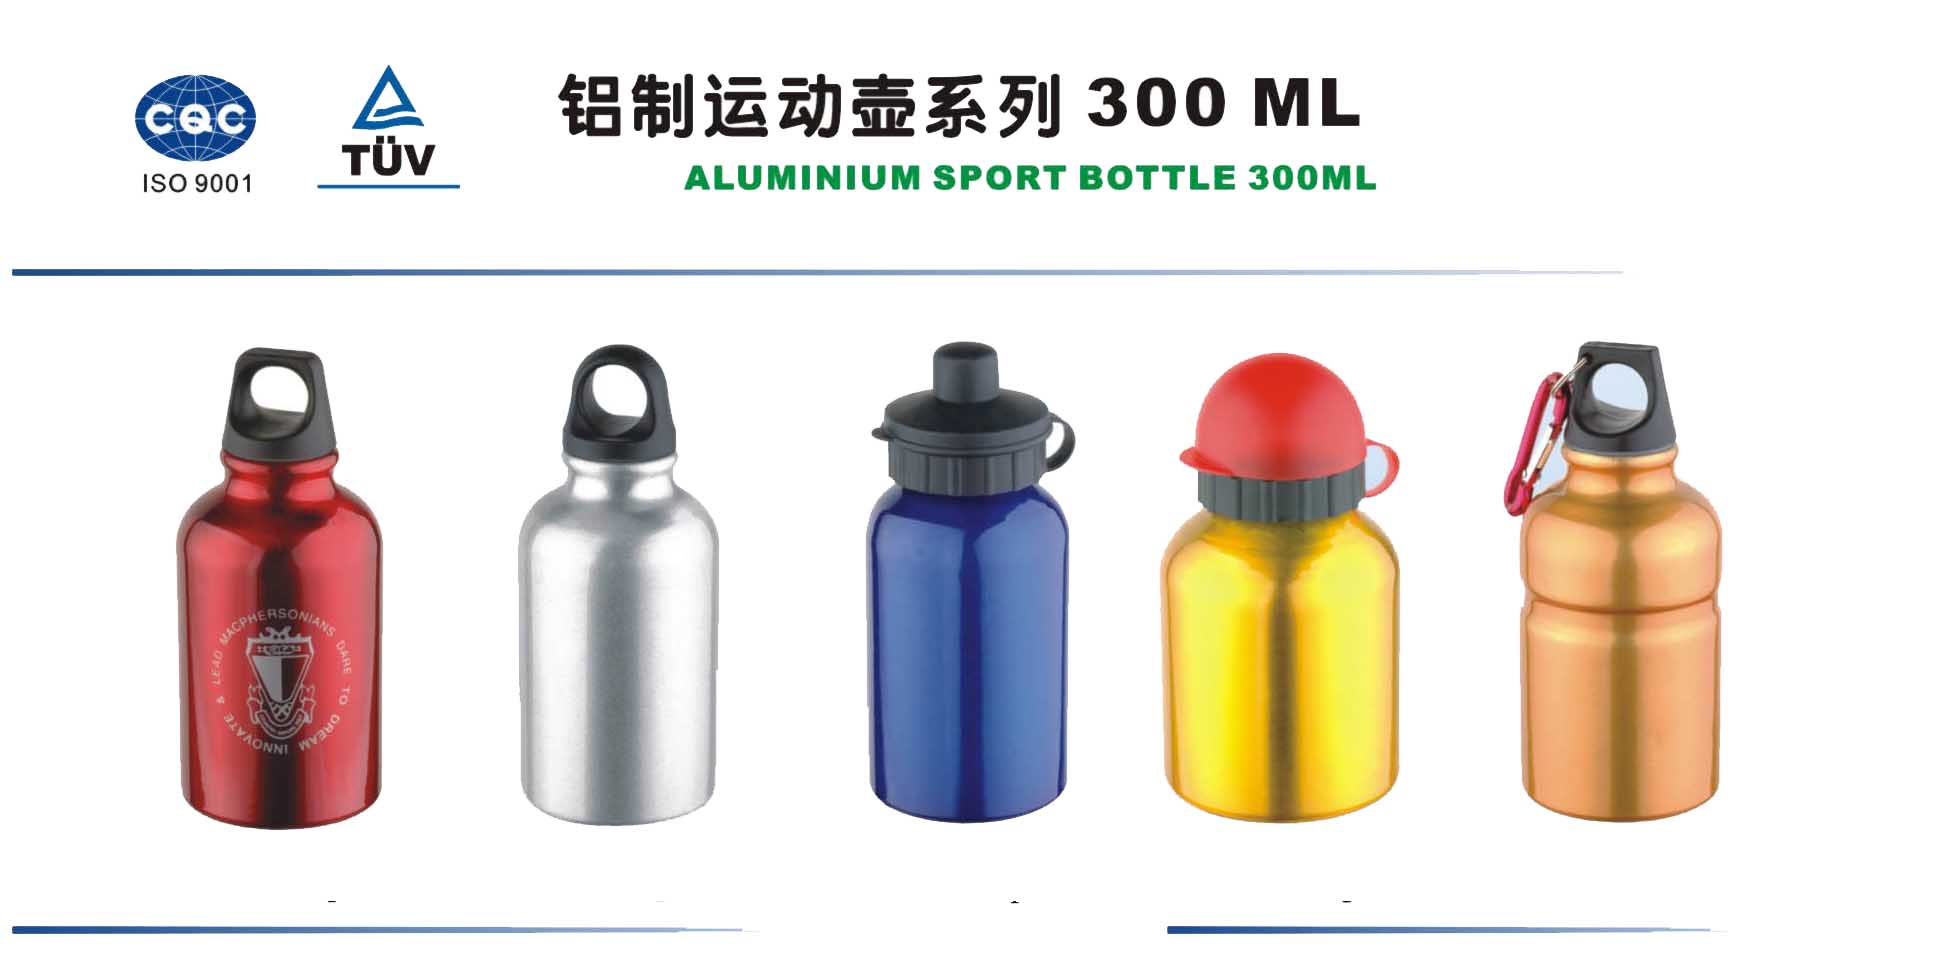  Aluminum Sport Bottle 300ml (Алюминиевый Спорт бутылка 300 мл)